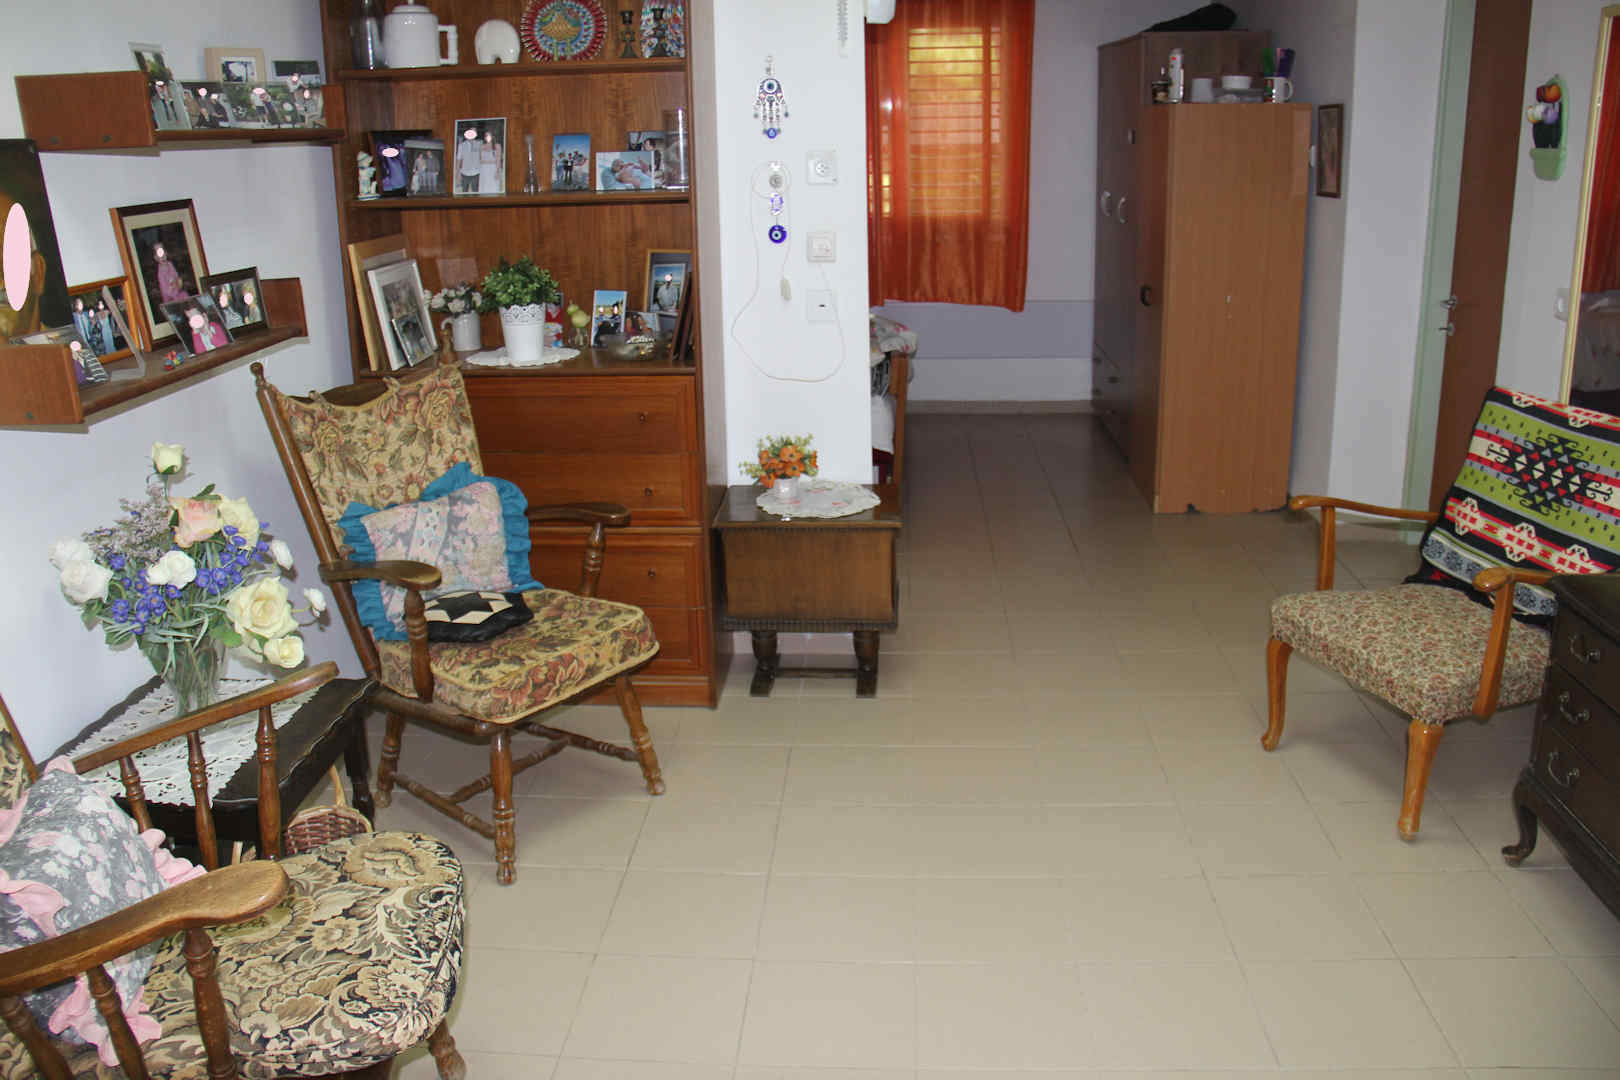 
						בית עיינות – בית אבות בקיבוץ רמת דוד חדר					